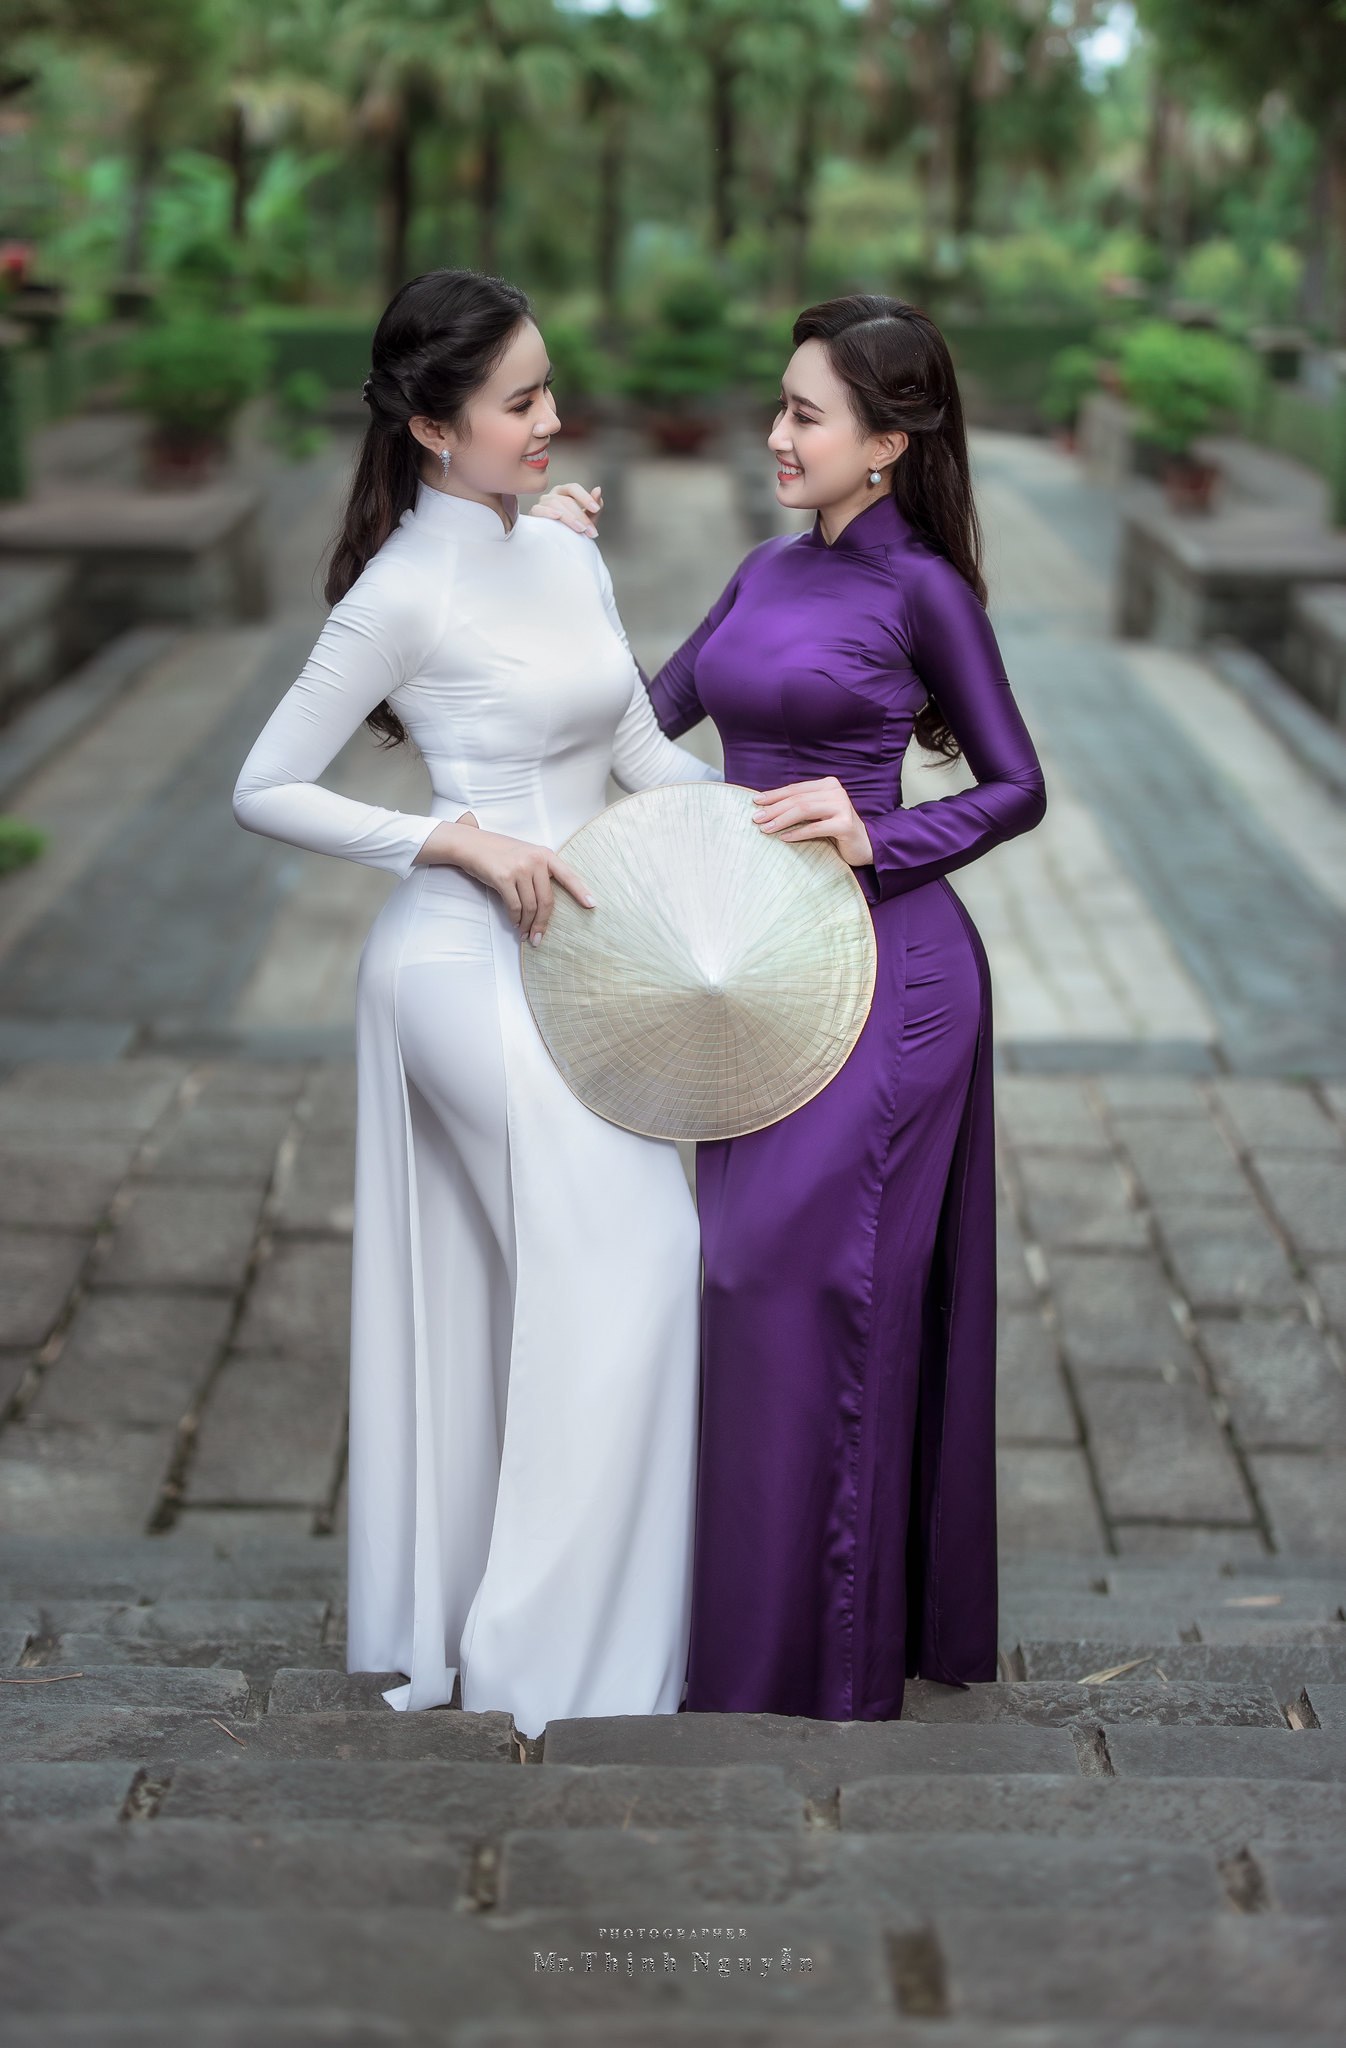 People 1346x2048 women áo dài white dress purple dress Vietnamese depth of field leaf hat Asian